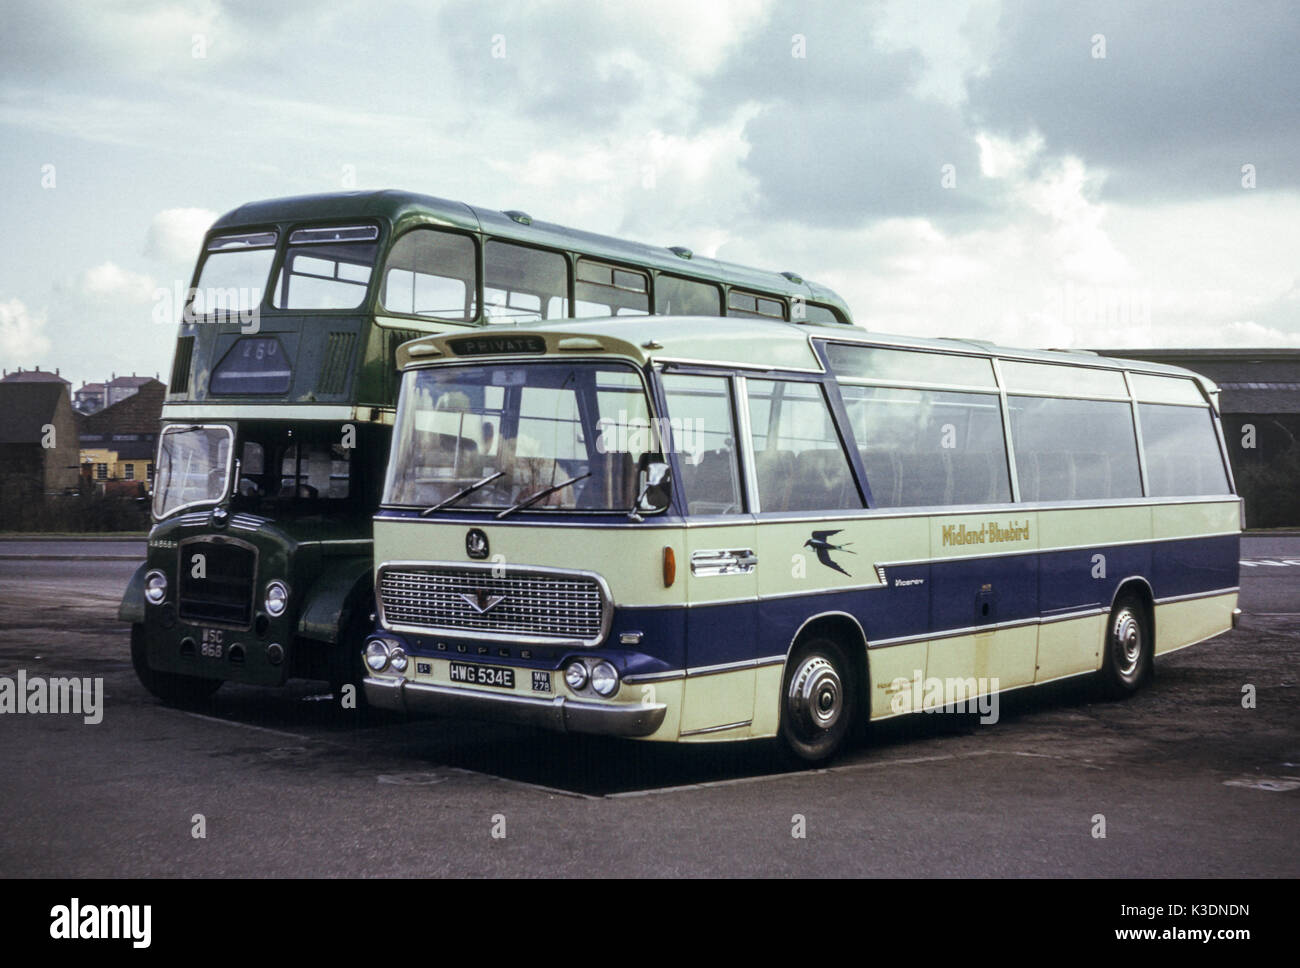 Escocia, Reino Unido - 1973: Vintage imagen de autobuses operan en 1973. Alexander Midland Bluebird MW278(registro HWG 534E) y Scottish Omnibus Bristol Lodekka ECW AA868 (registro WSC 868). Foto de stock